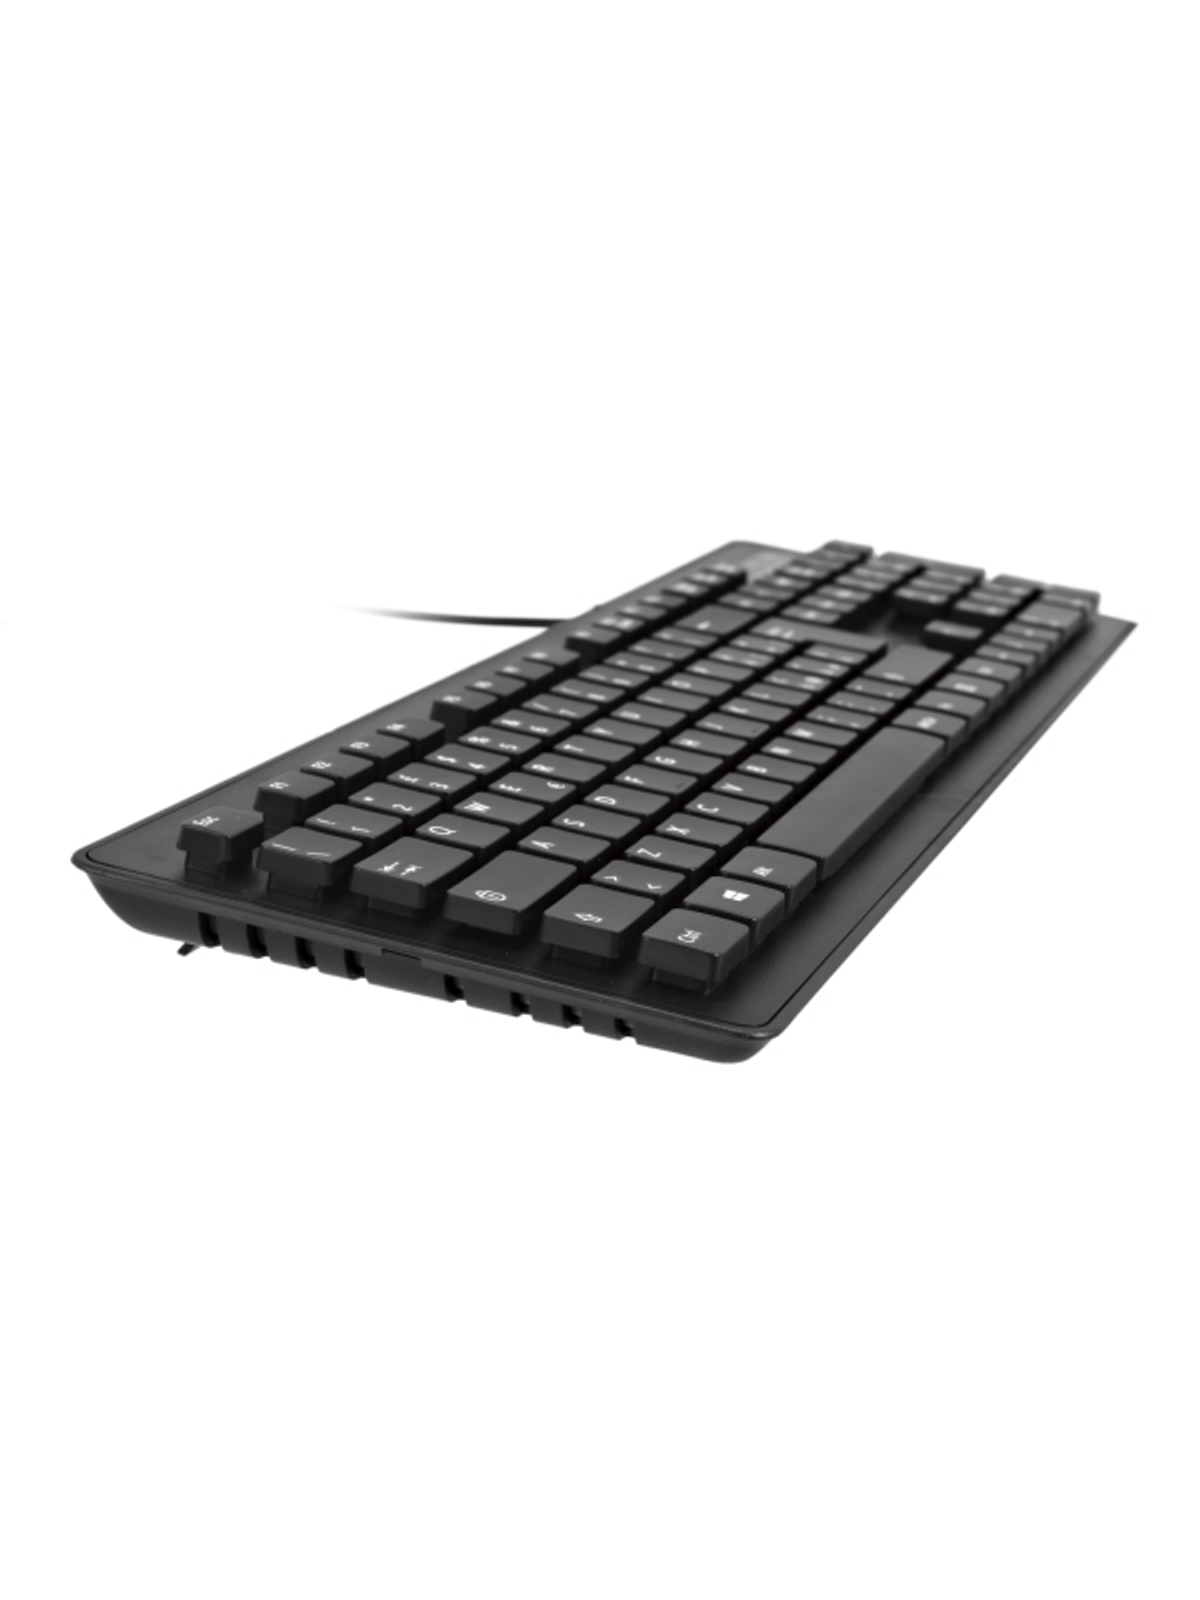 CKU700IT, V7 Maus Schwarz Set, Tastatur